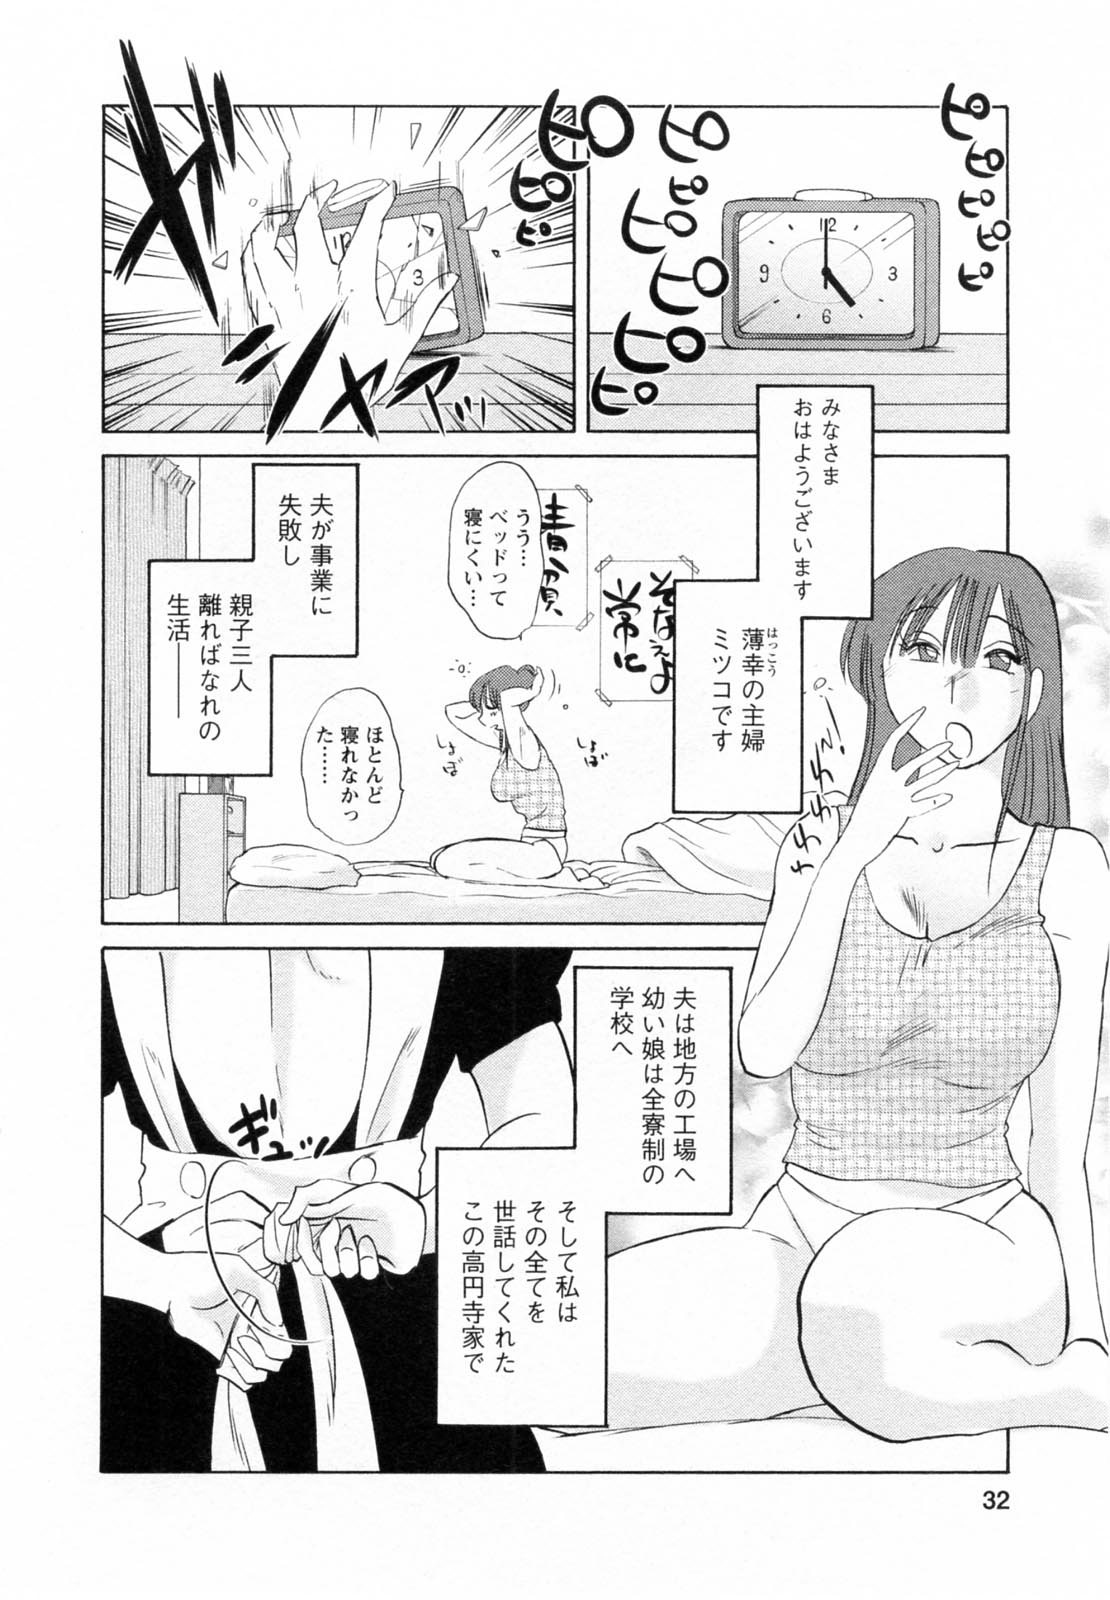 [Tsuya Tsuya] Maid no Mitsukosan Vol.1 page 32 full